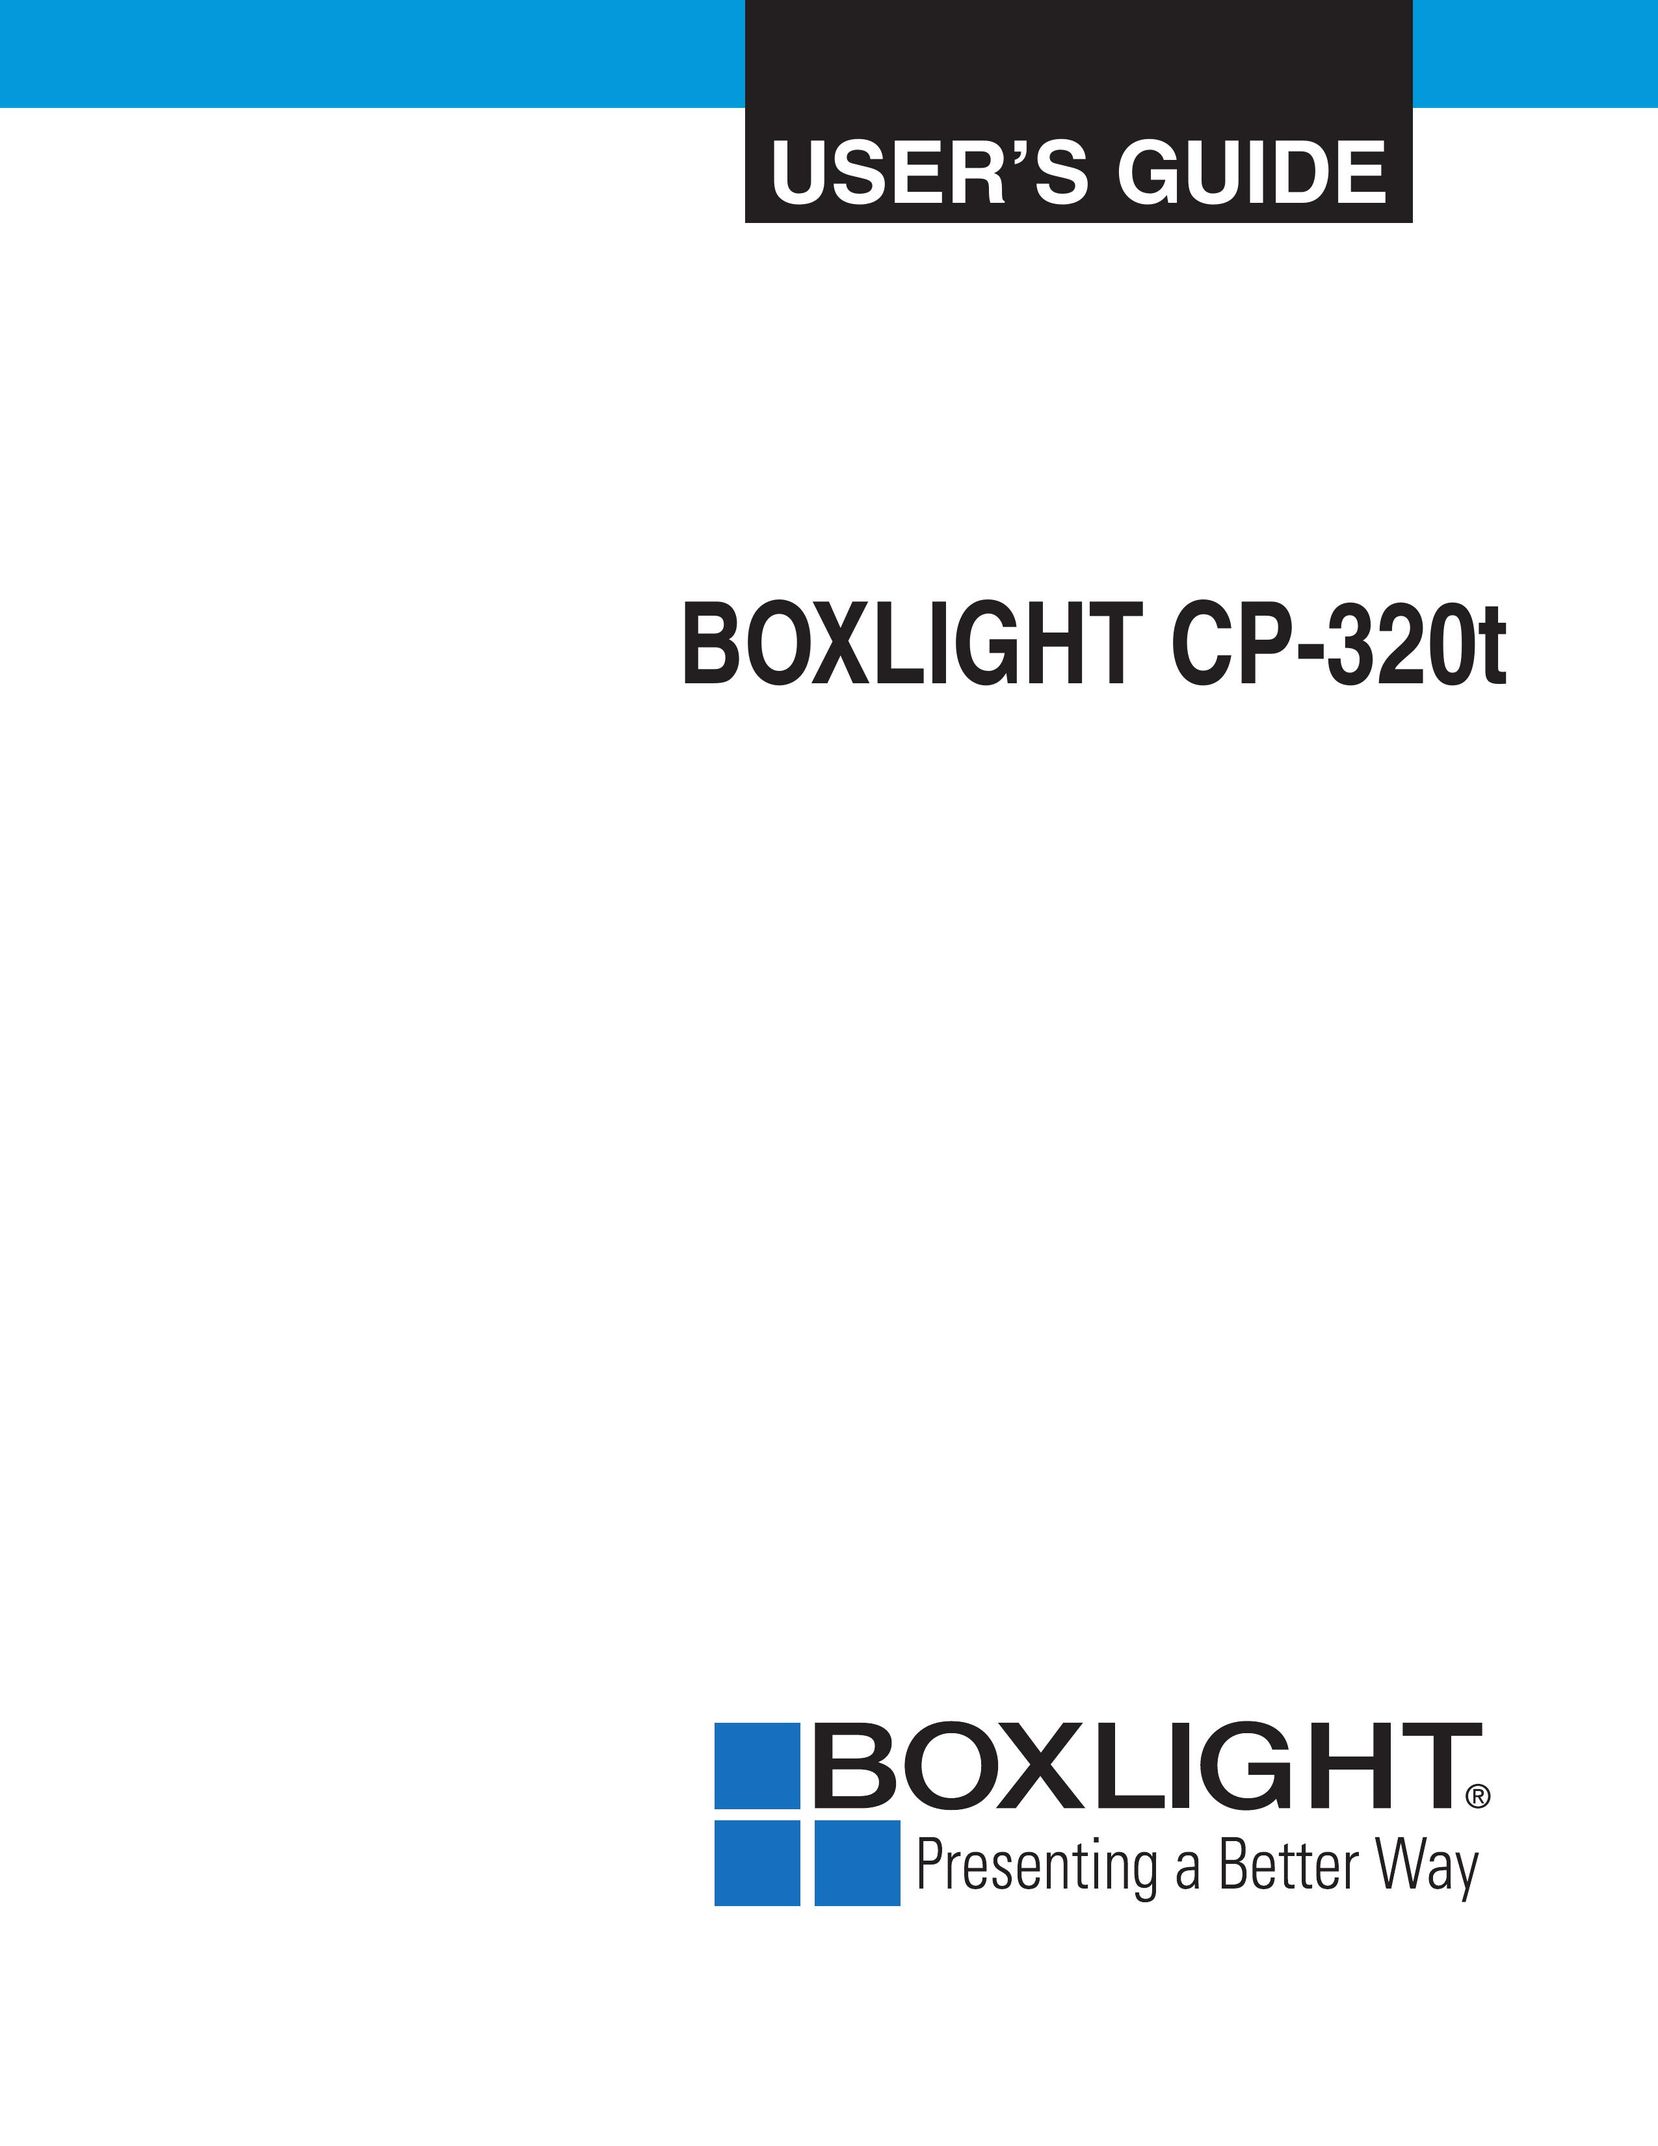 BOXLIGHT CP-320t Projector User Manual